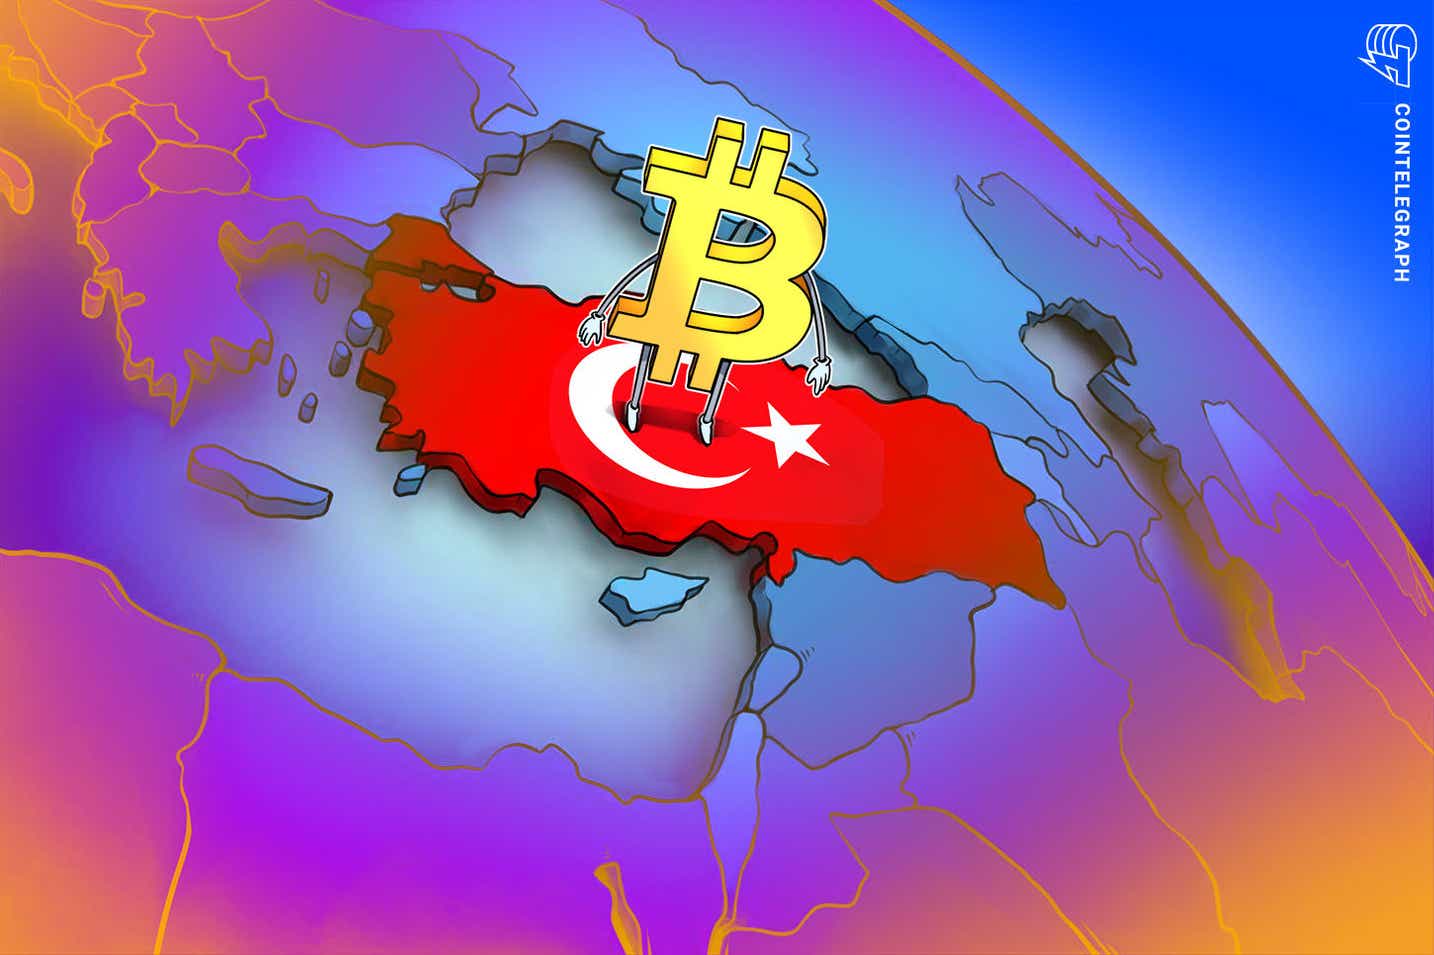 btc - با سقوط ارز فیات لیر، بیت کوین در ترکیه به بالاترین حد خود رسید